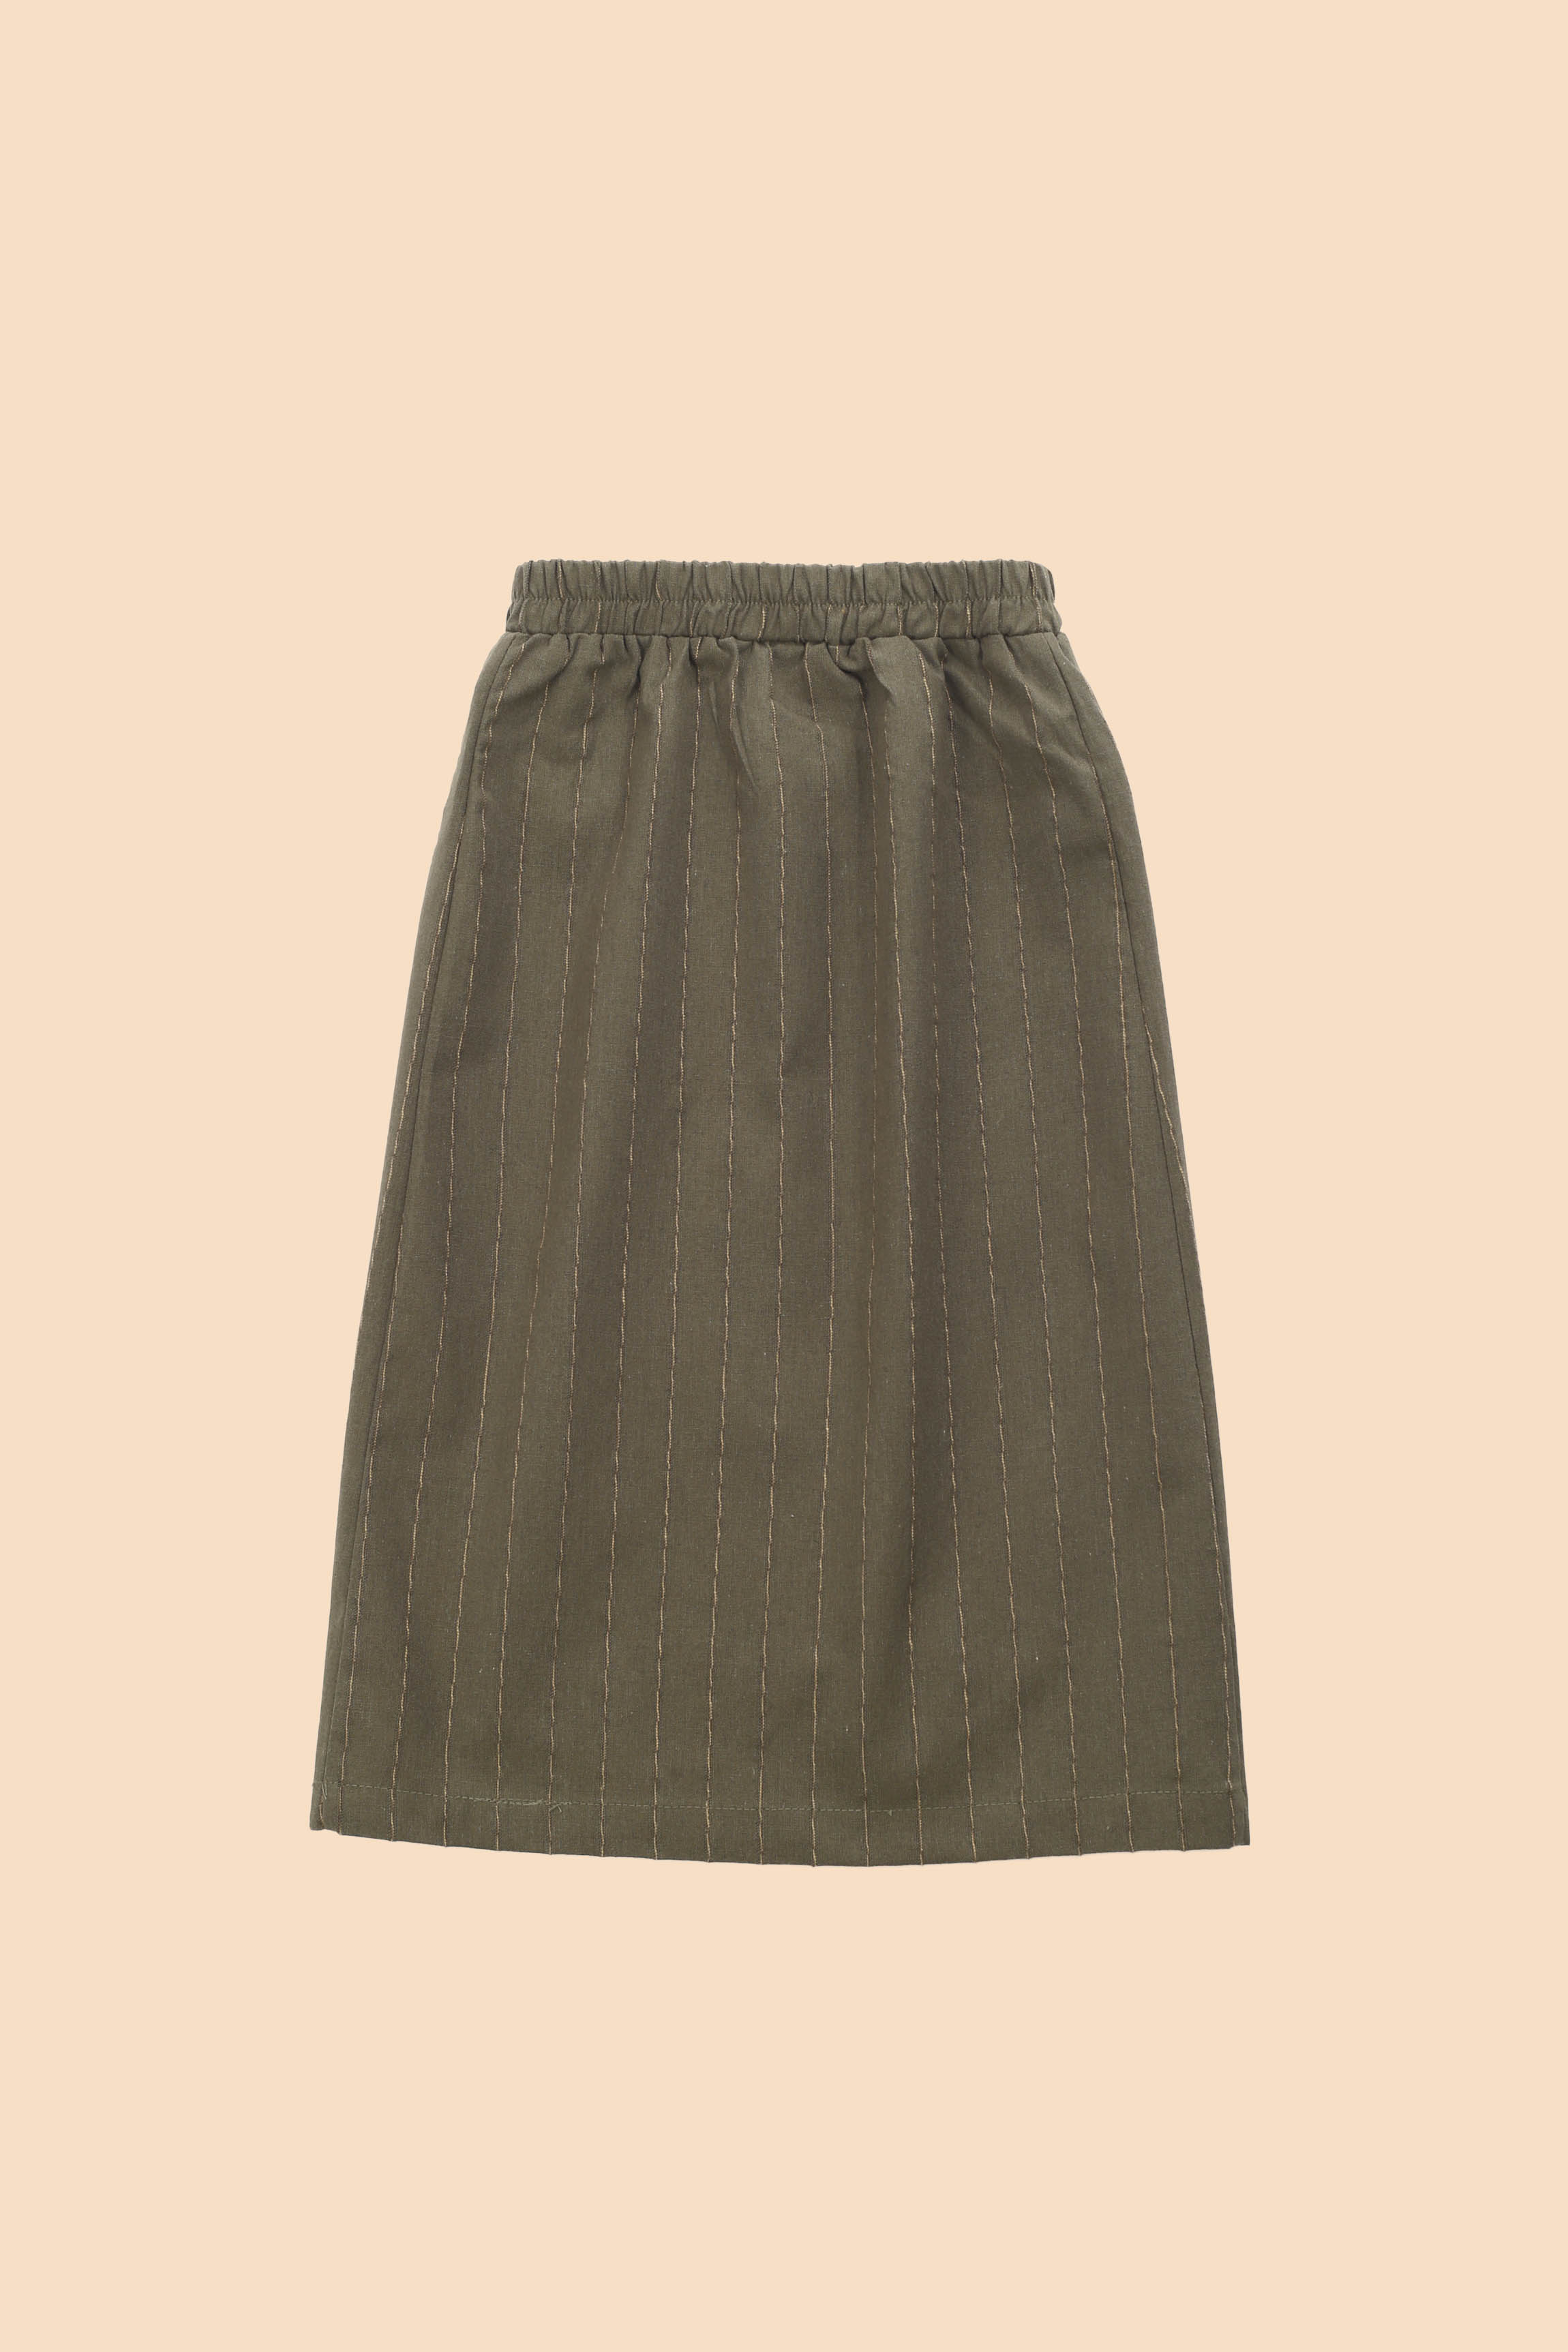 The Matahari Classic Skirt Green Stripe